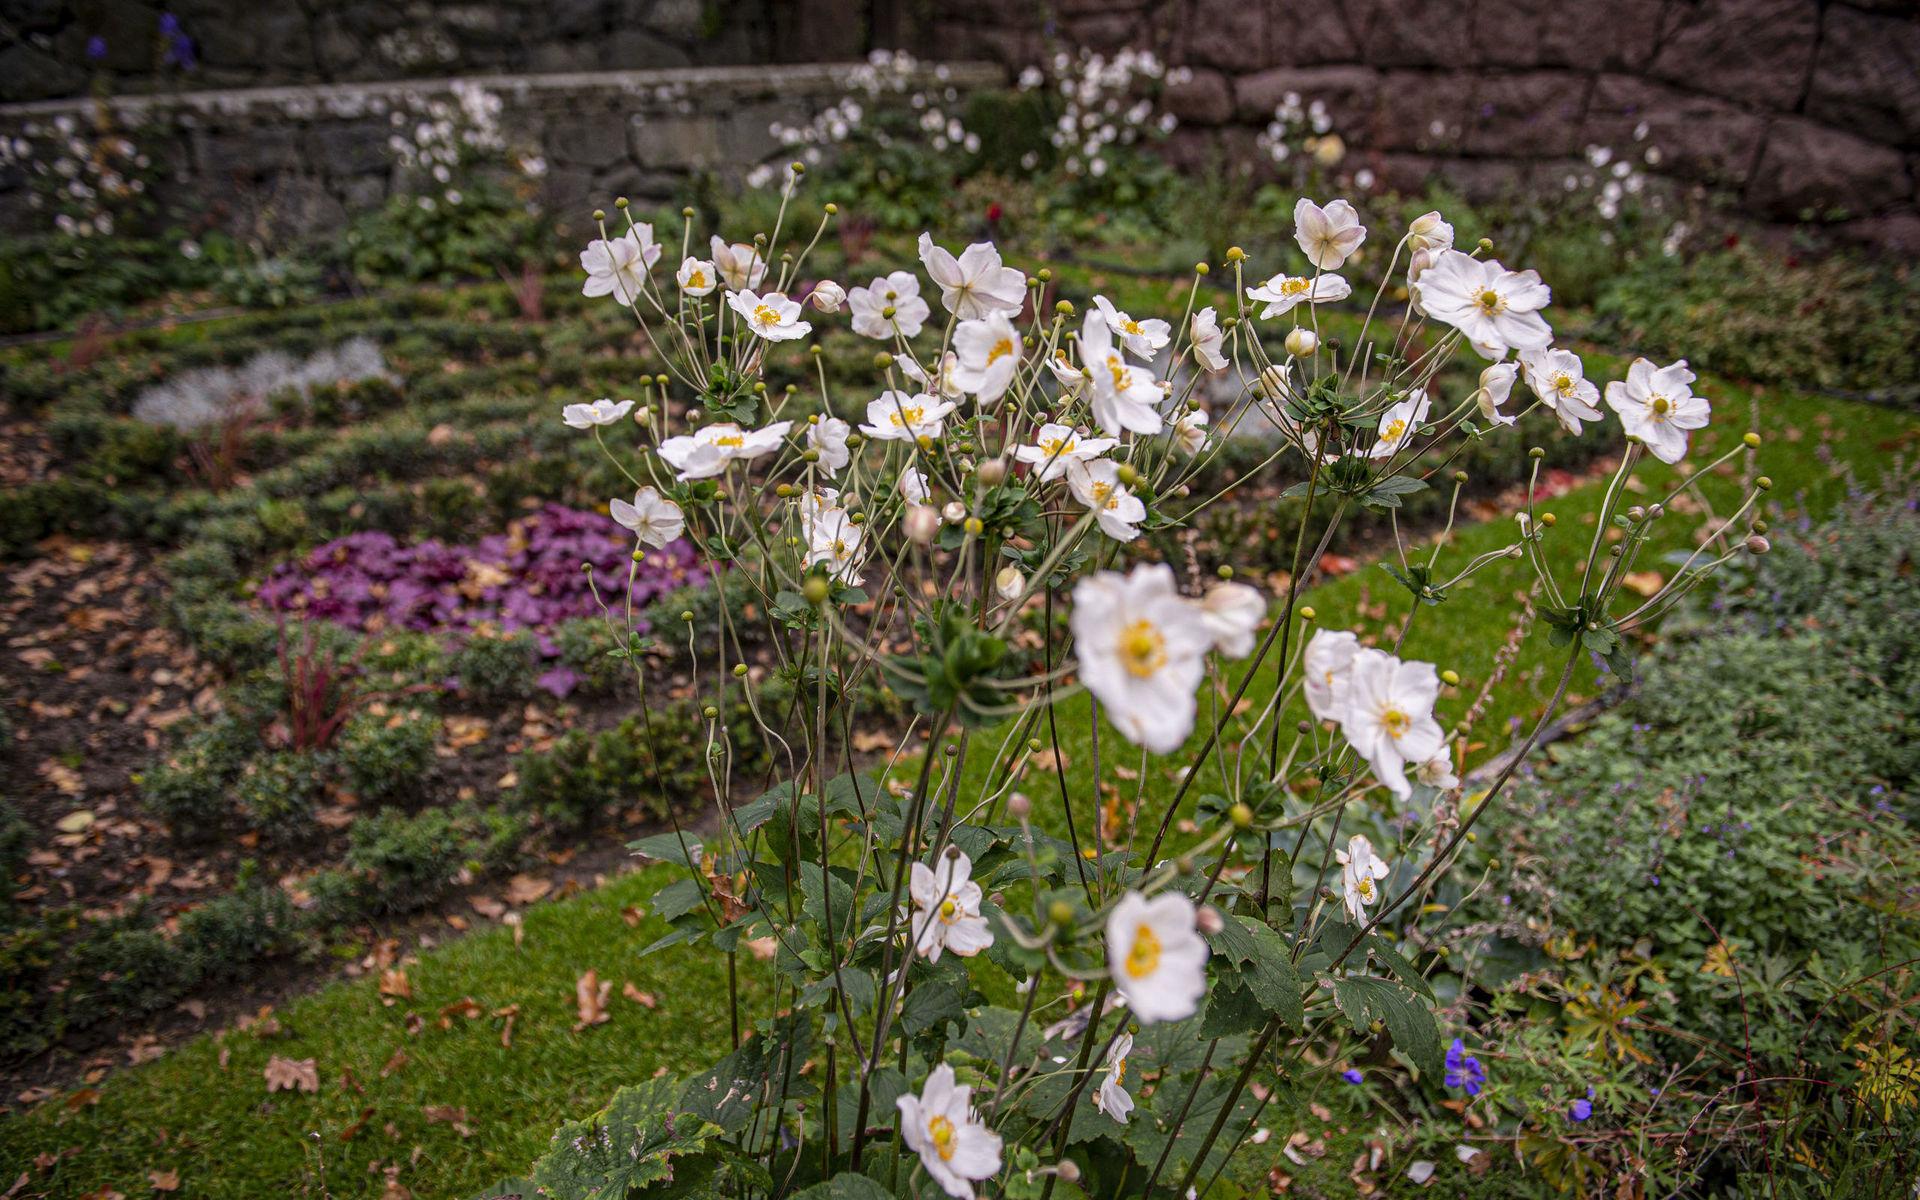 Ritad av Lars Israel Wahlman i början av 1900-talet men skapad först 115 år senare. av den nuvarande slottsträdgårdsmästaren John Taylor. Tjolöholms engelska knot garden, eller knut-trädgården. Höstanemonen blommar sent in på höstsäsongen.